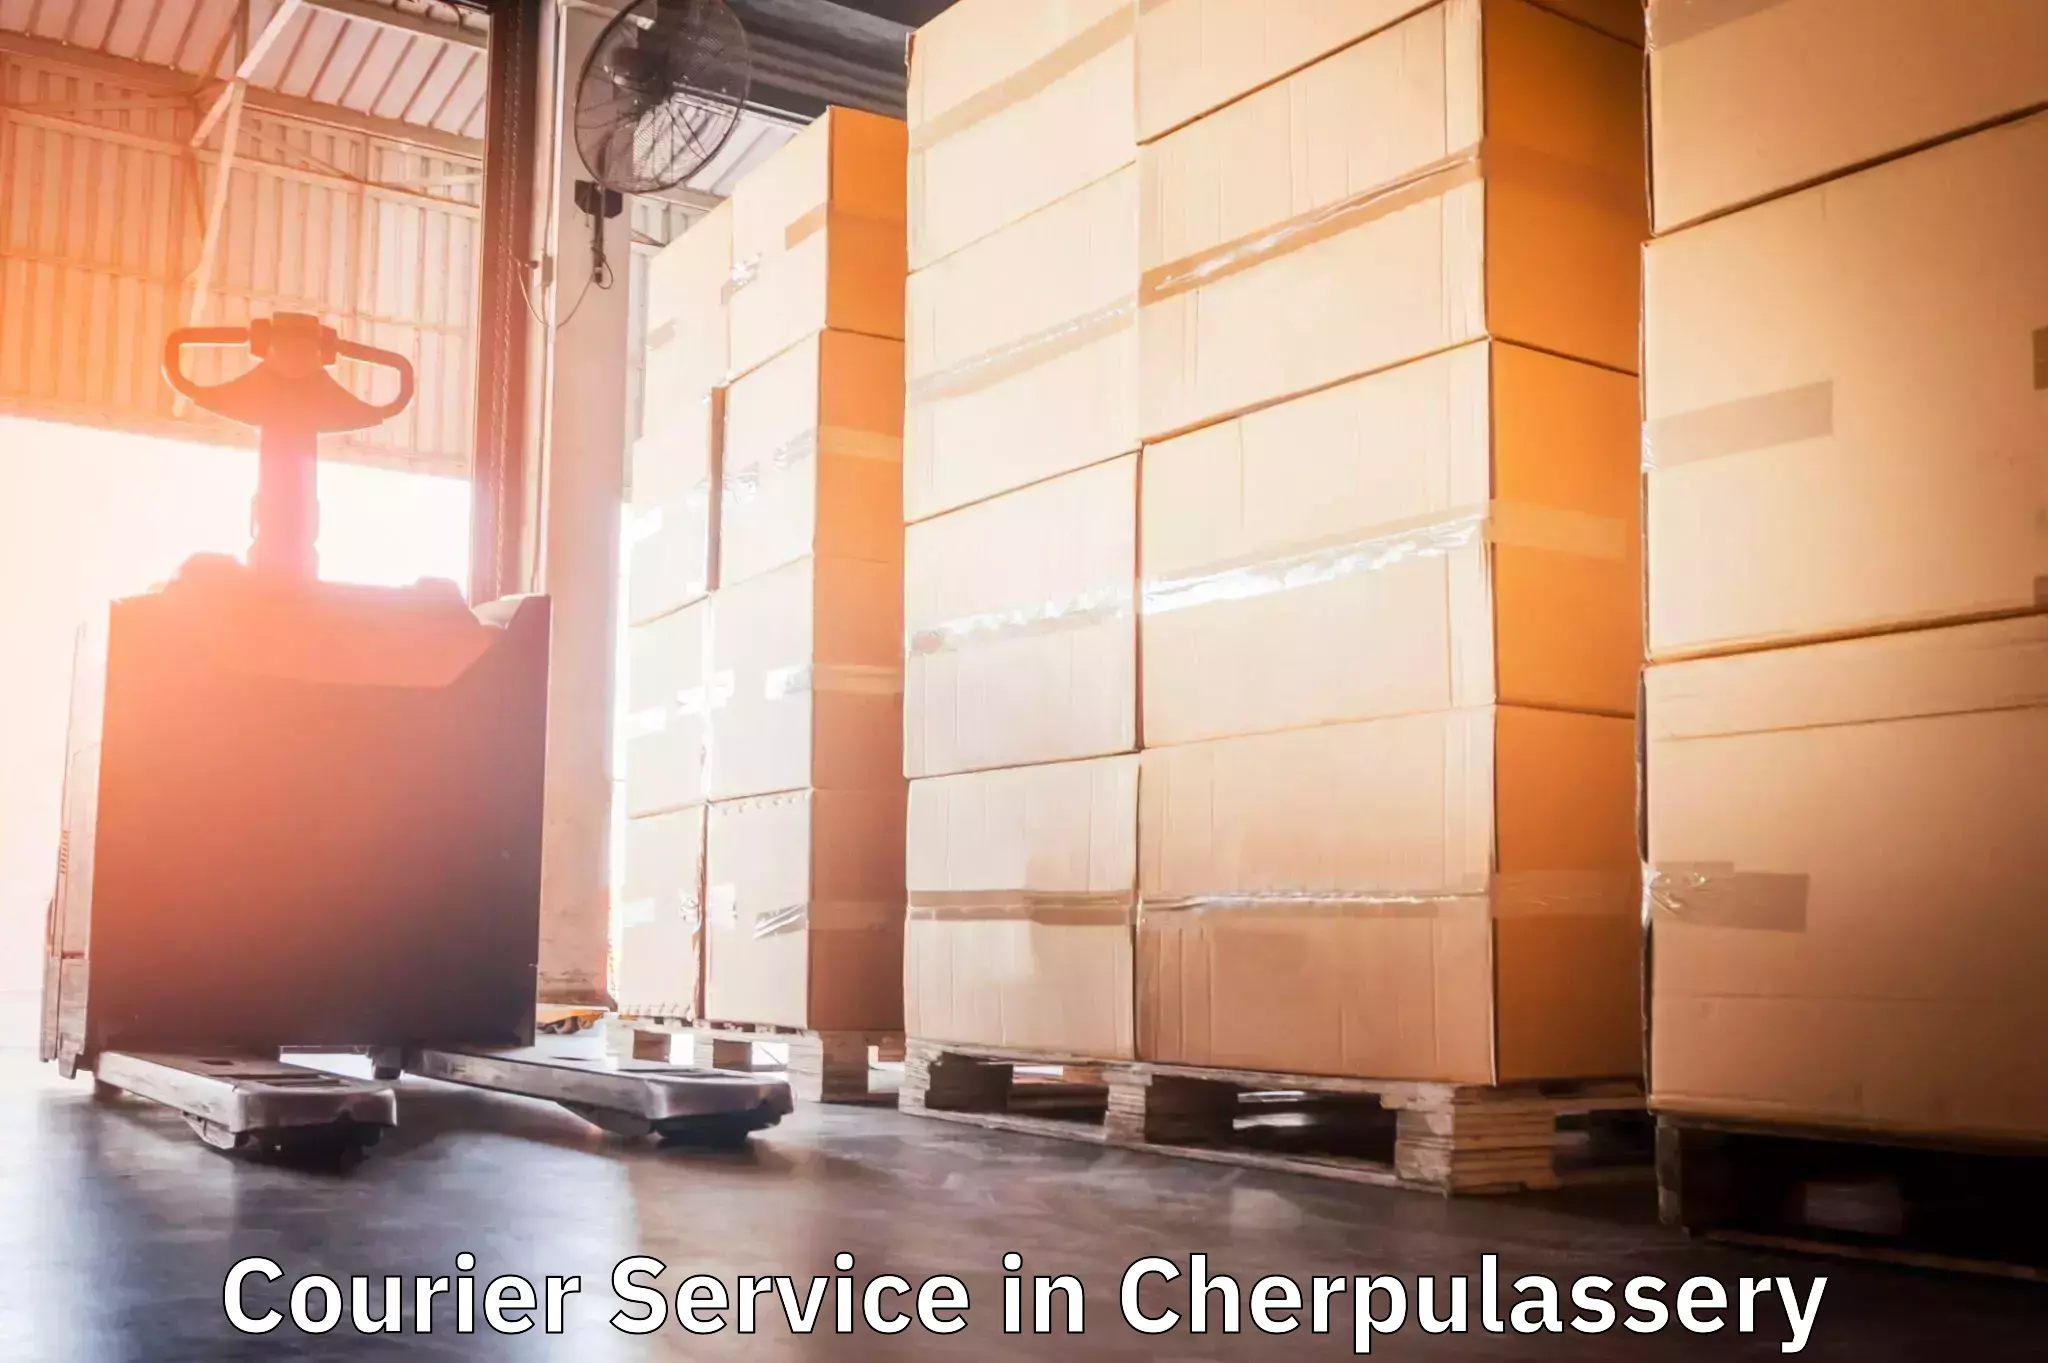 Urgent courier needs in Cherpulassery